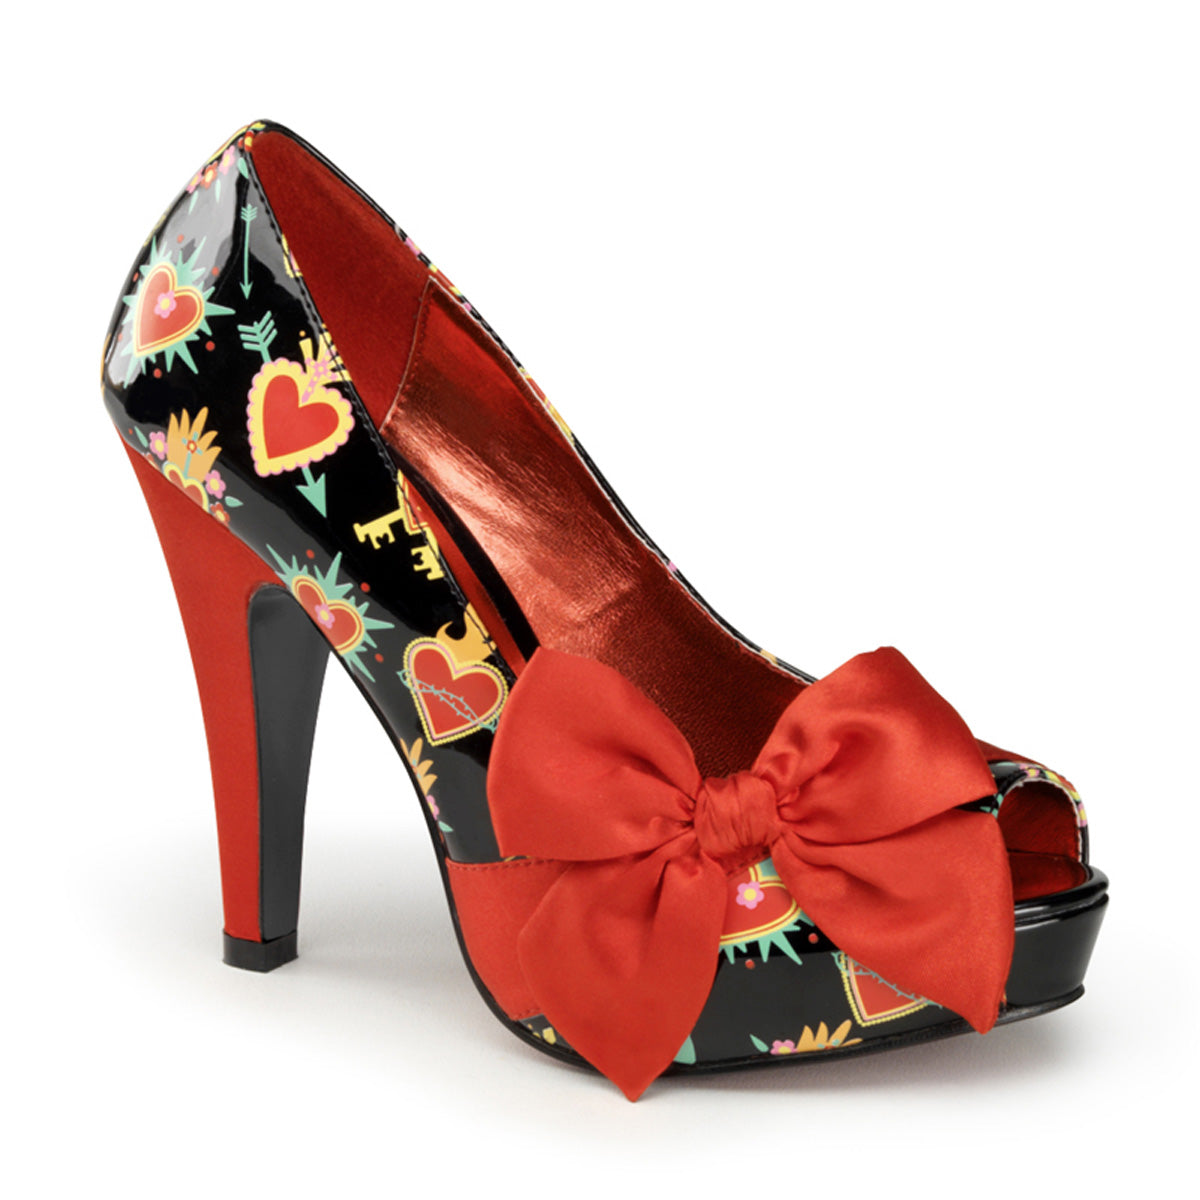 Bettie-13 Pin Up Glamour 4.5 "каблуки черные красные платформы обувь